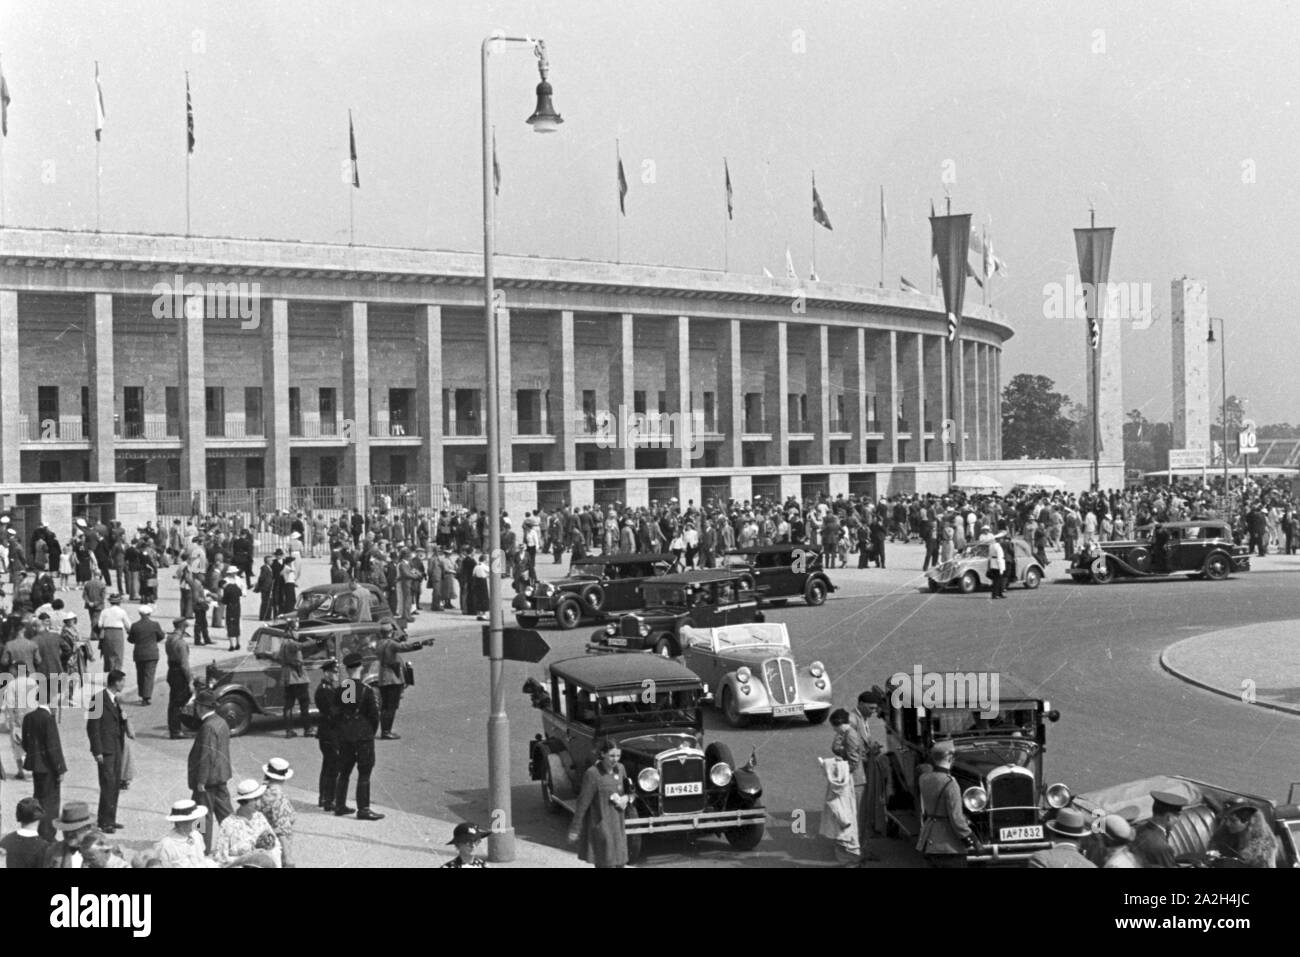 Eine Menschenmenge einer Straße mit Taxis vor dem Stadion in Berlin, Deutschland, 1930er Jahre. Masse an einer stark befahrenen Straße mit Taxis vor dem Olympiastadion Berlin, Deutschland 1930. Stockfoto